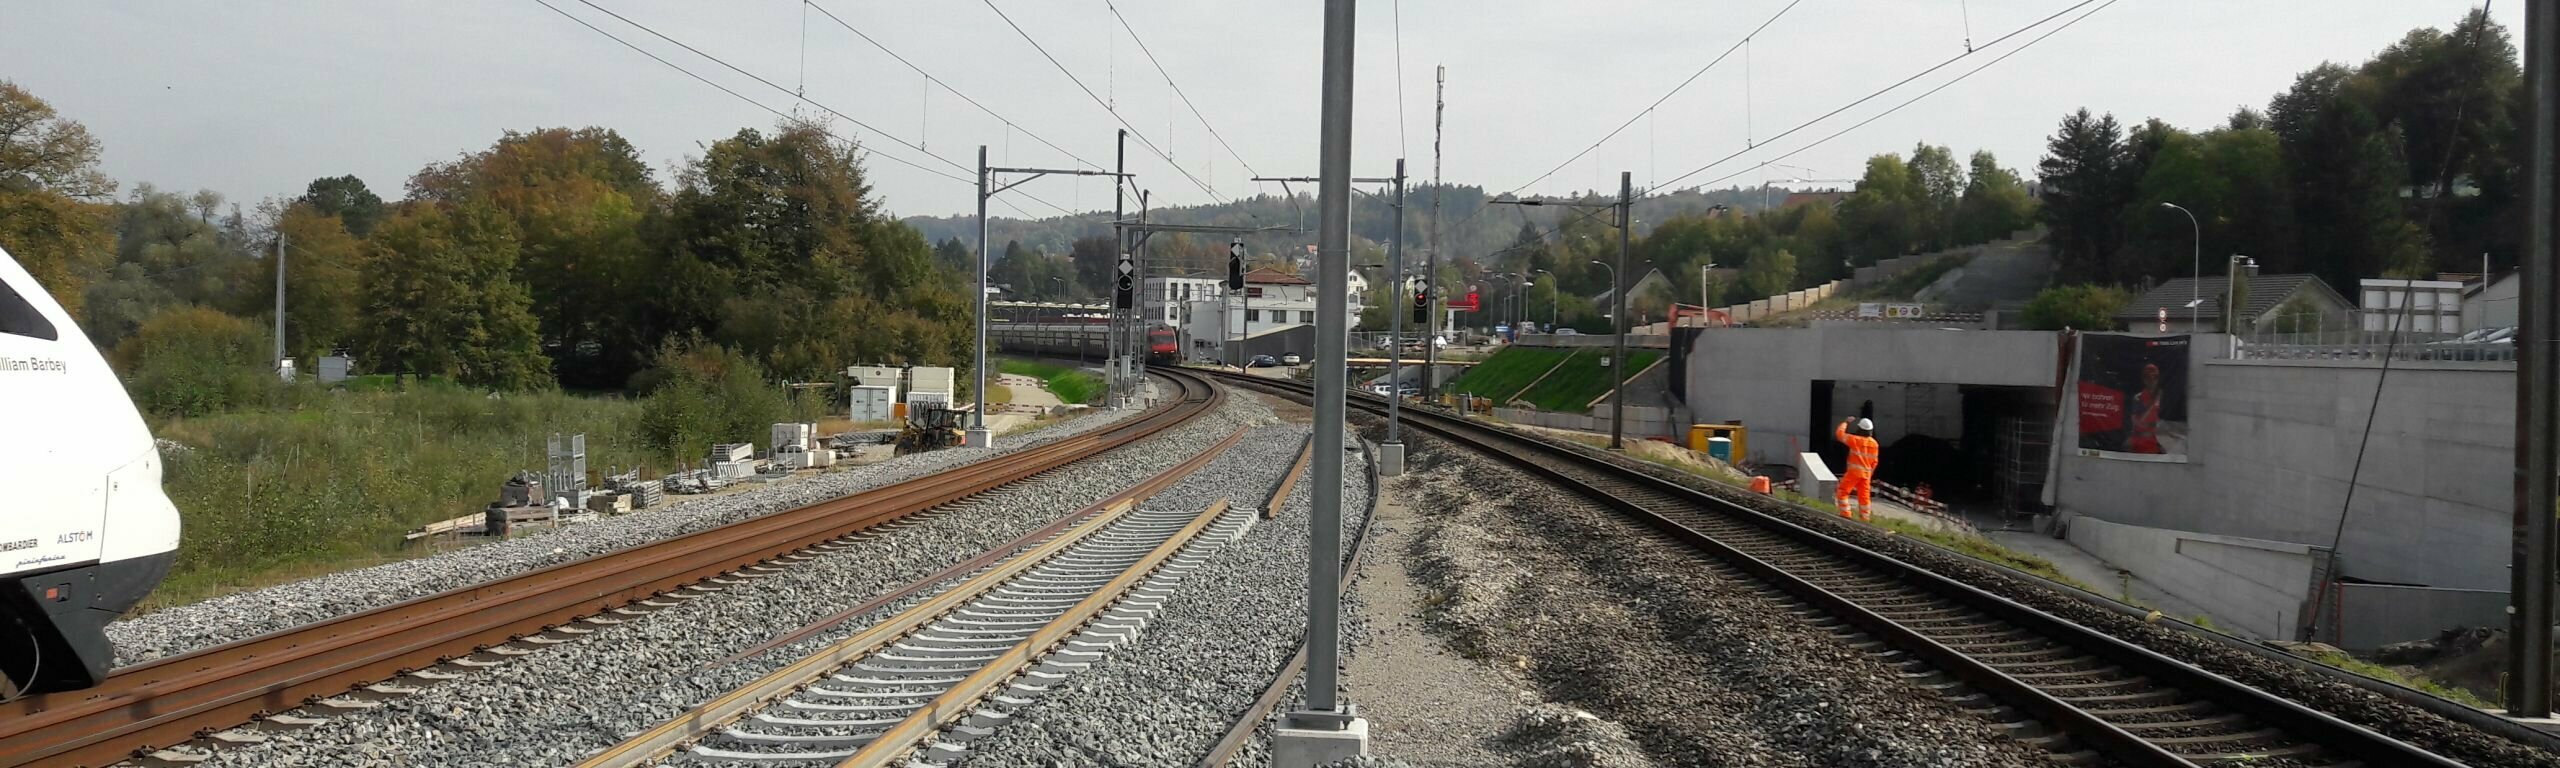 Sicht auf die Gleise in Richtung Aarau